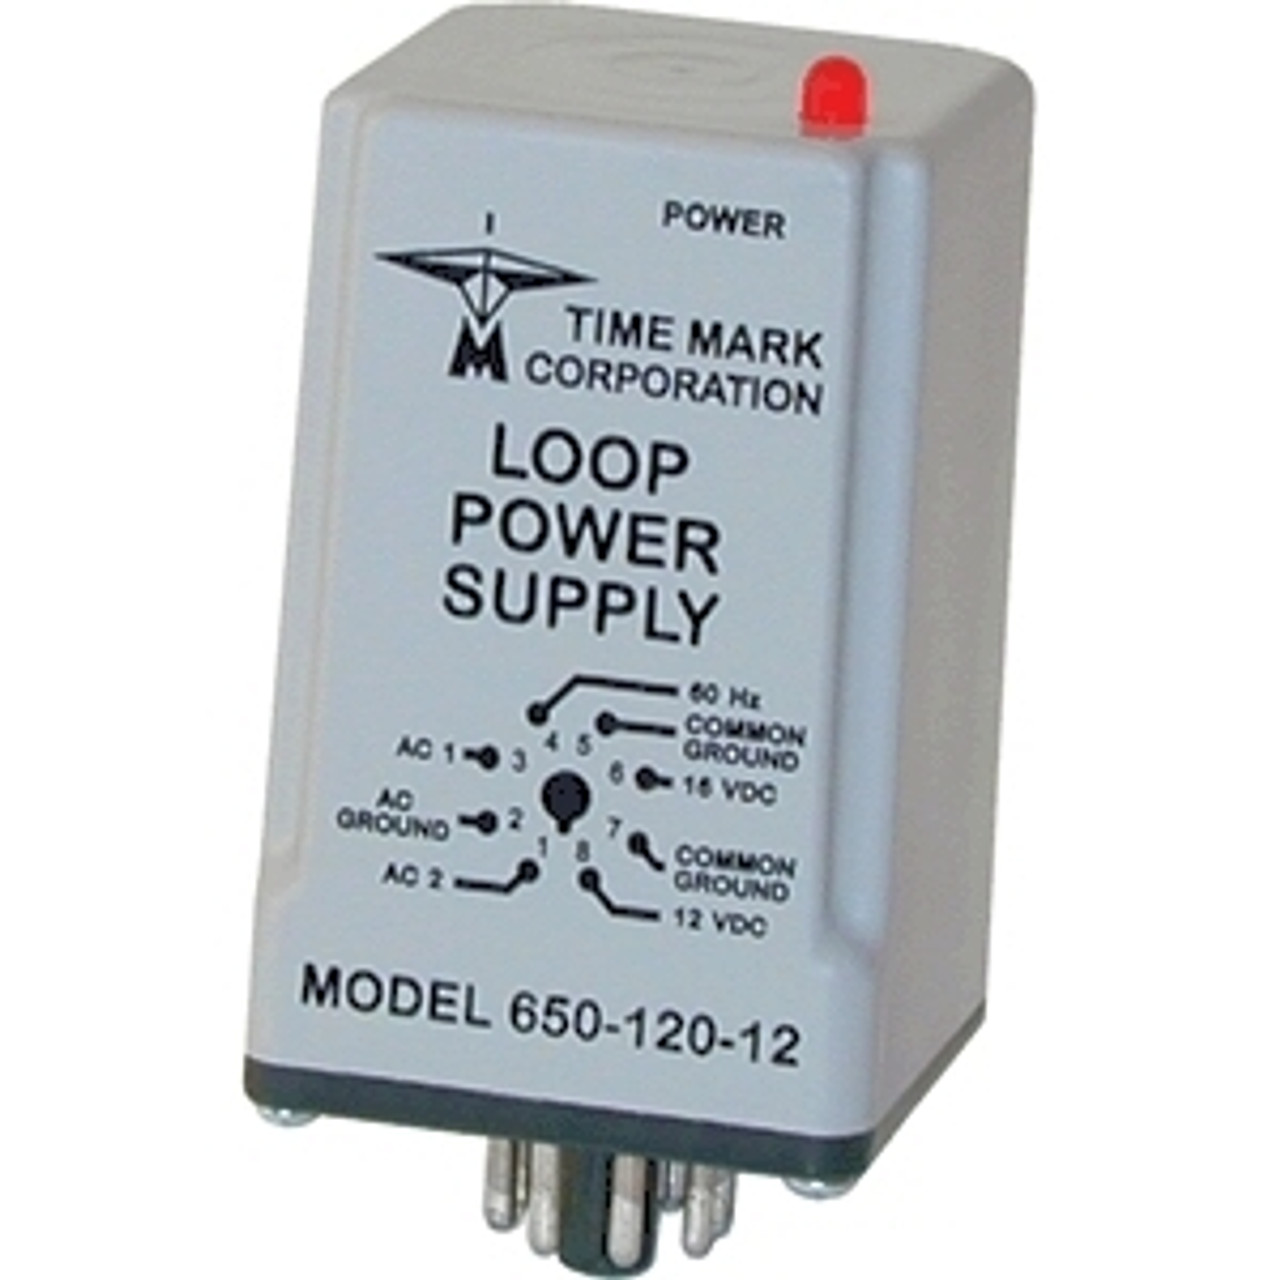 TimeMark 650-240-24 Loop Power Supplies